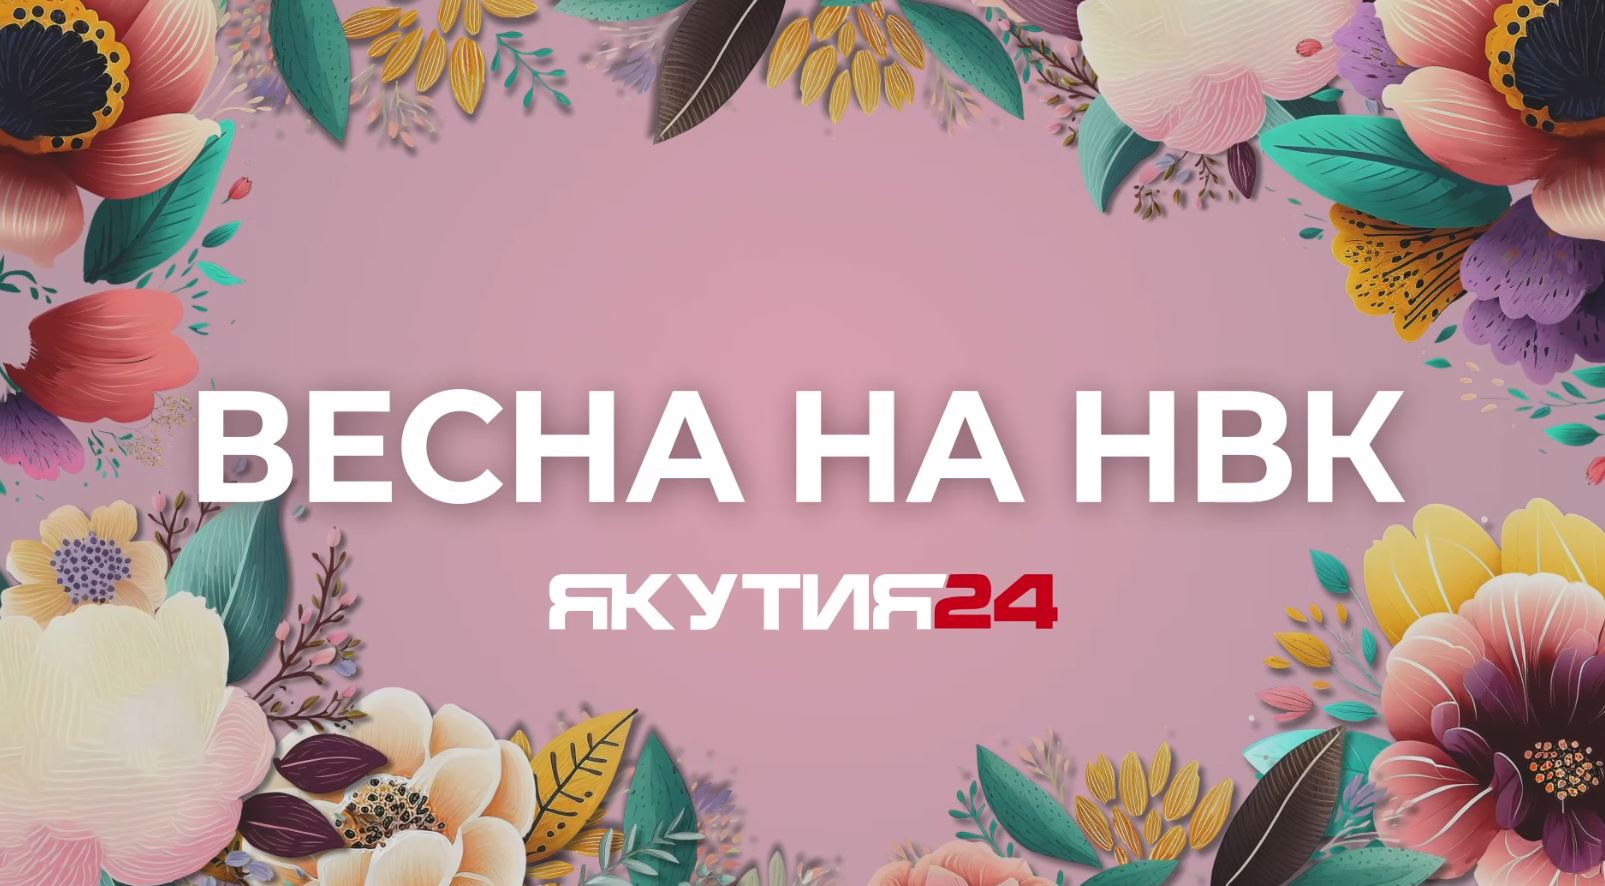 Корреспонденты телеканала «Якутия 24» будут работать в Томмоте 30 марта в рамках проекта «Весна на НВК»